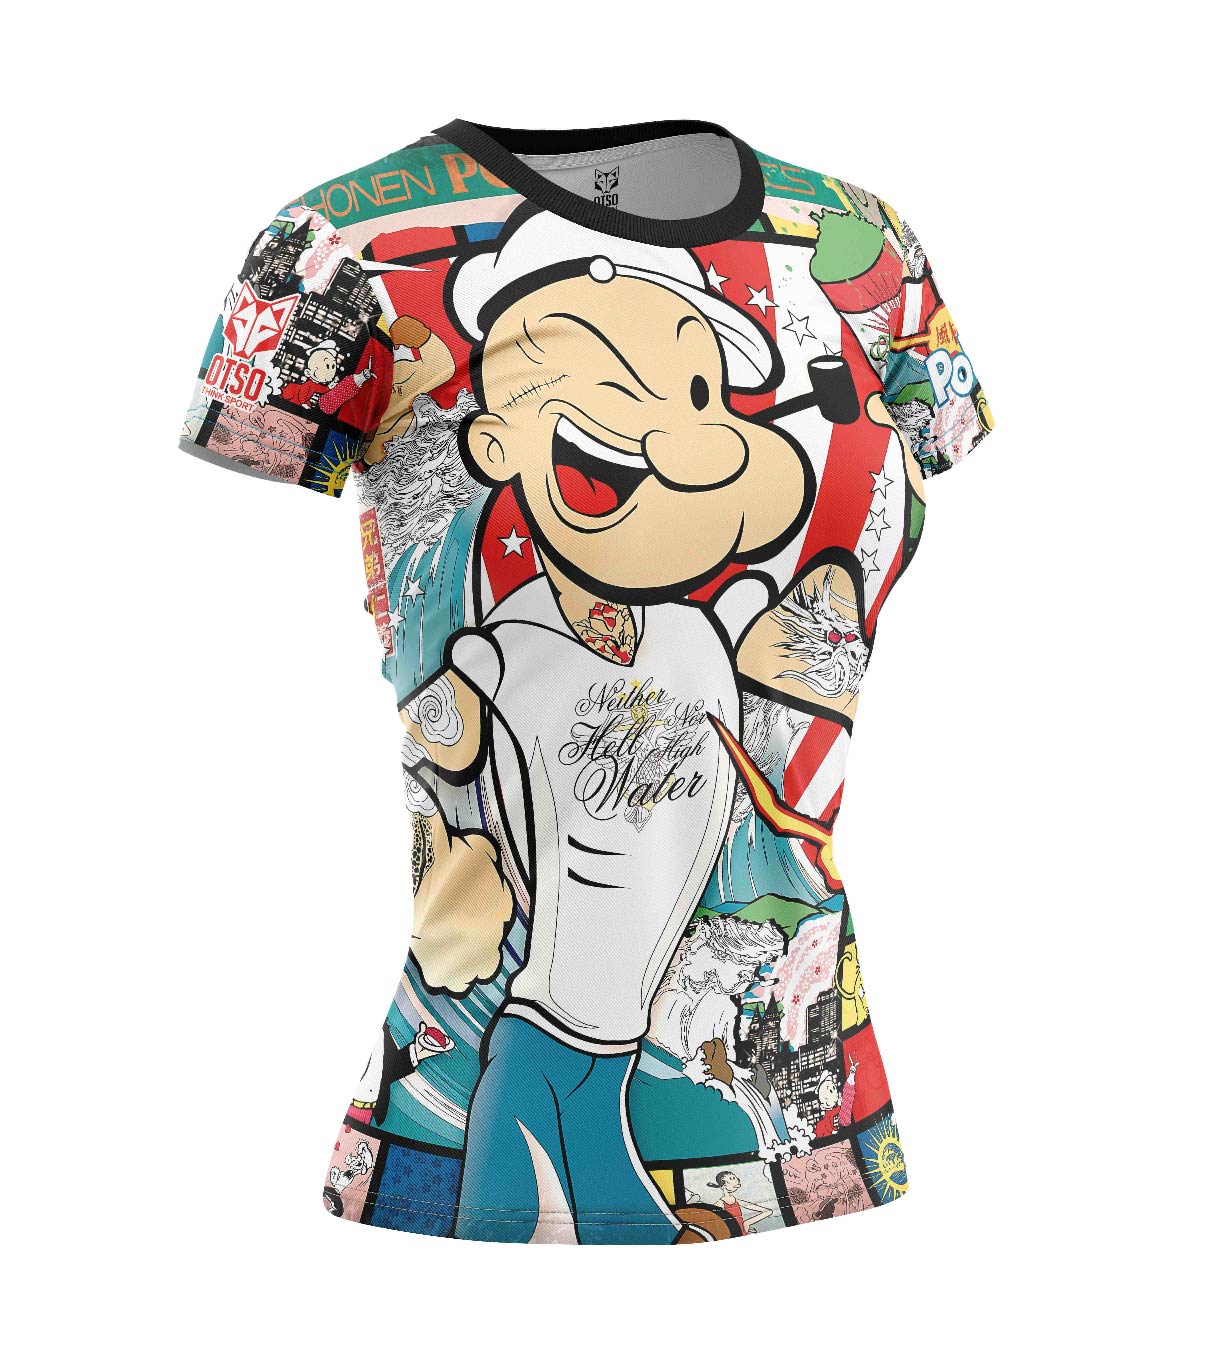 Camiseta manga corta mujer - Popeye Art Show